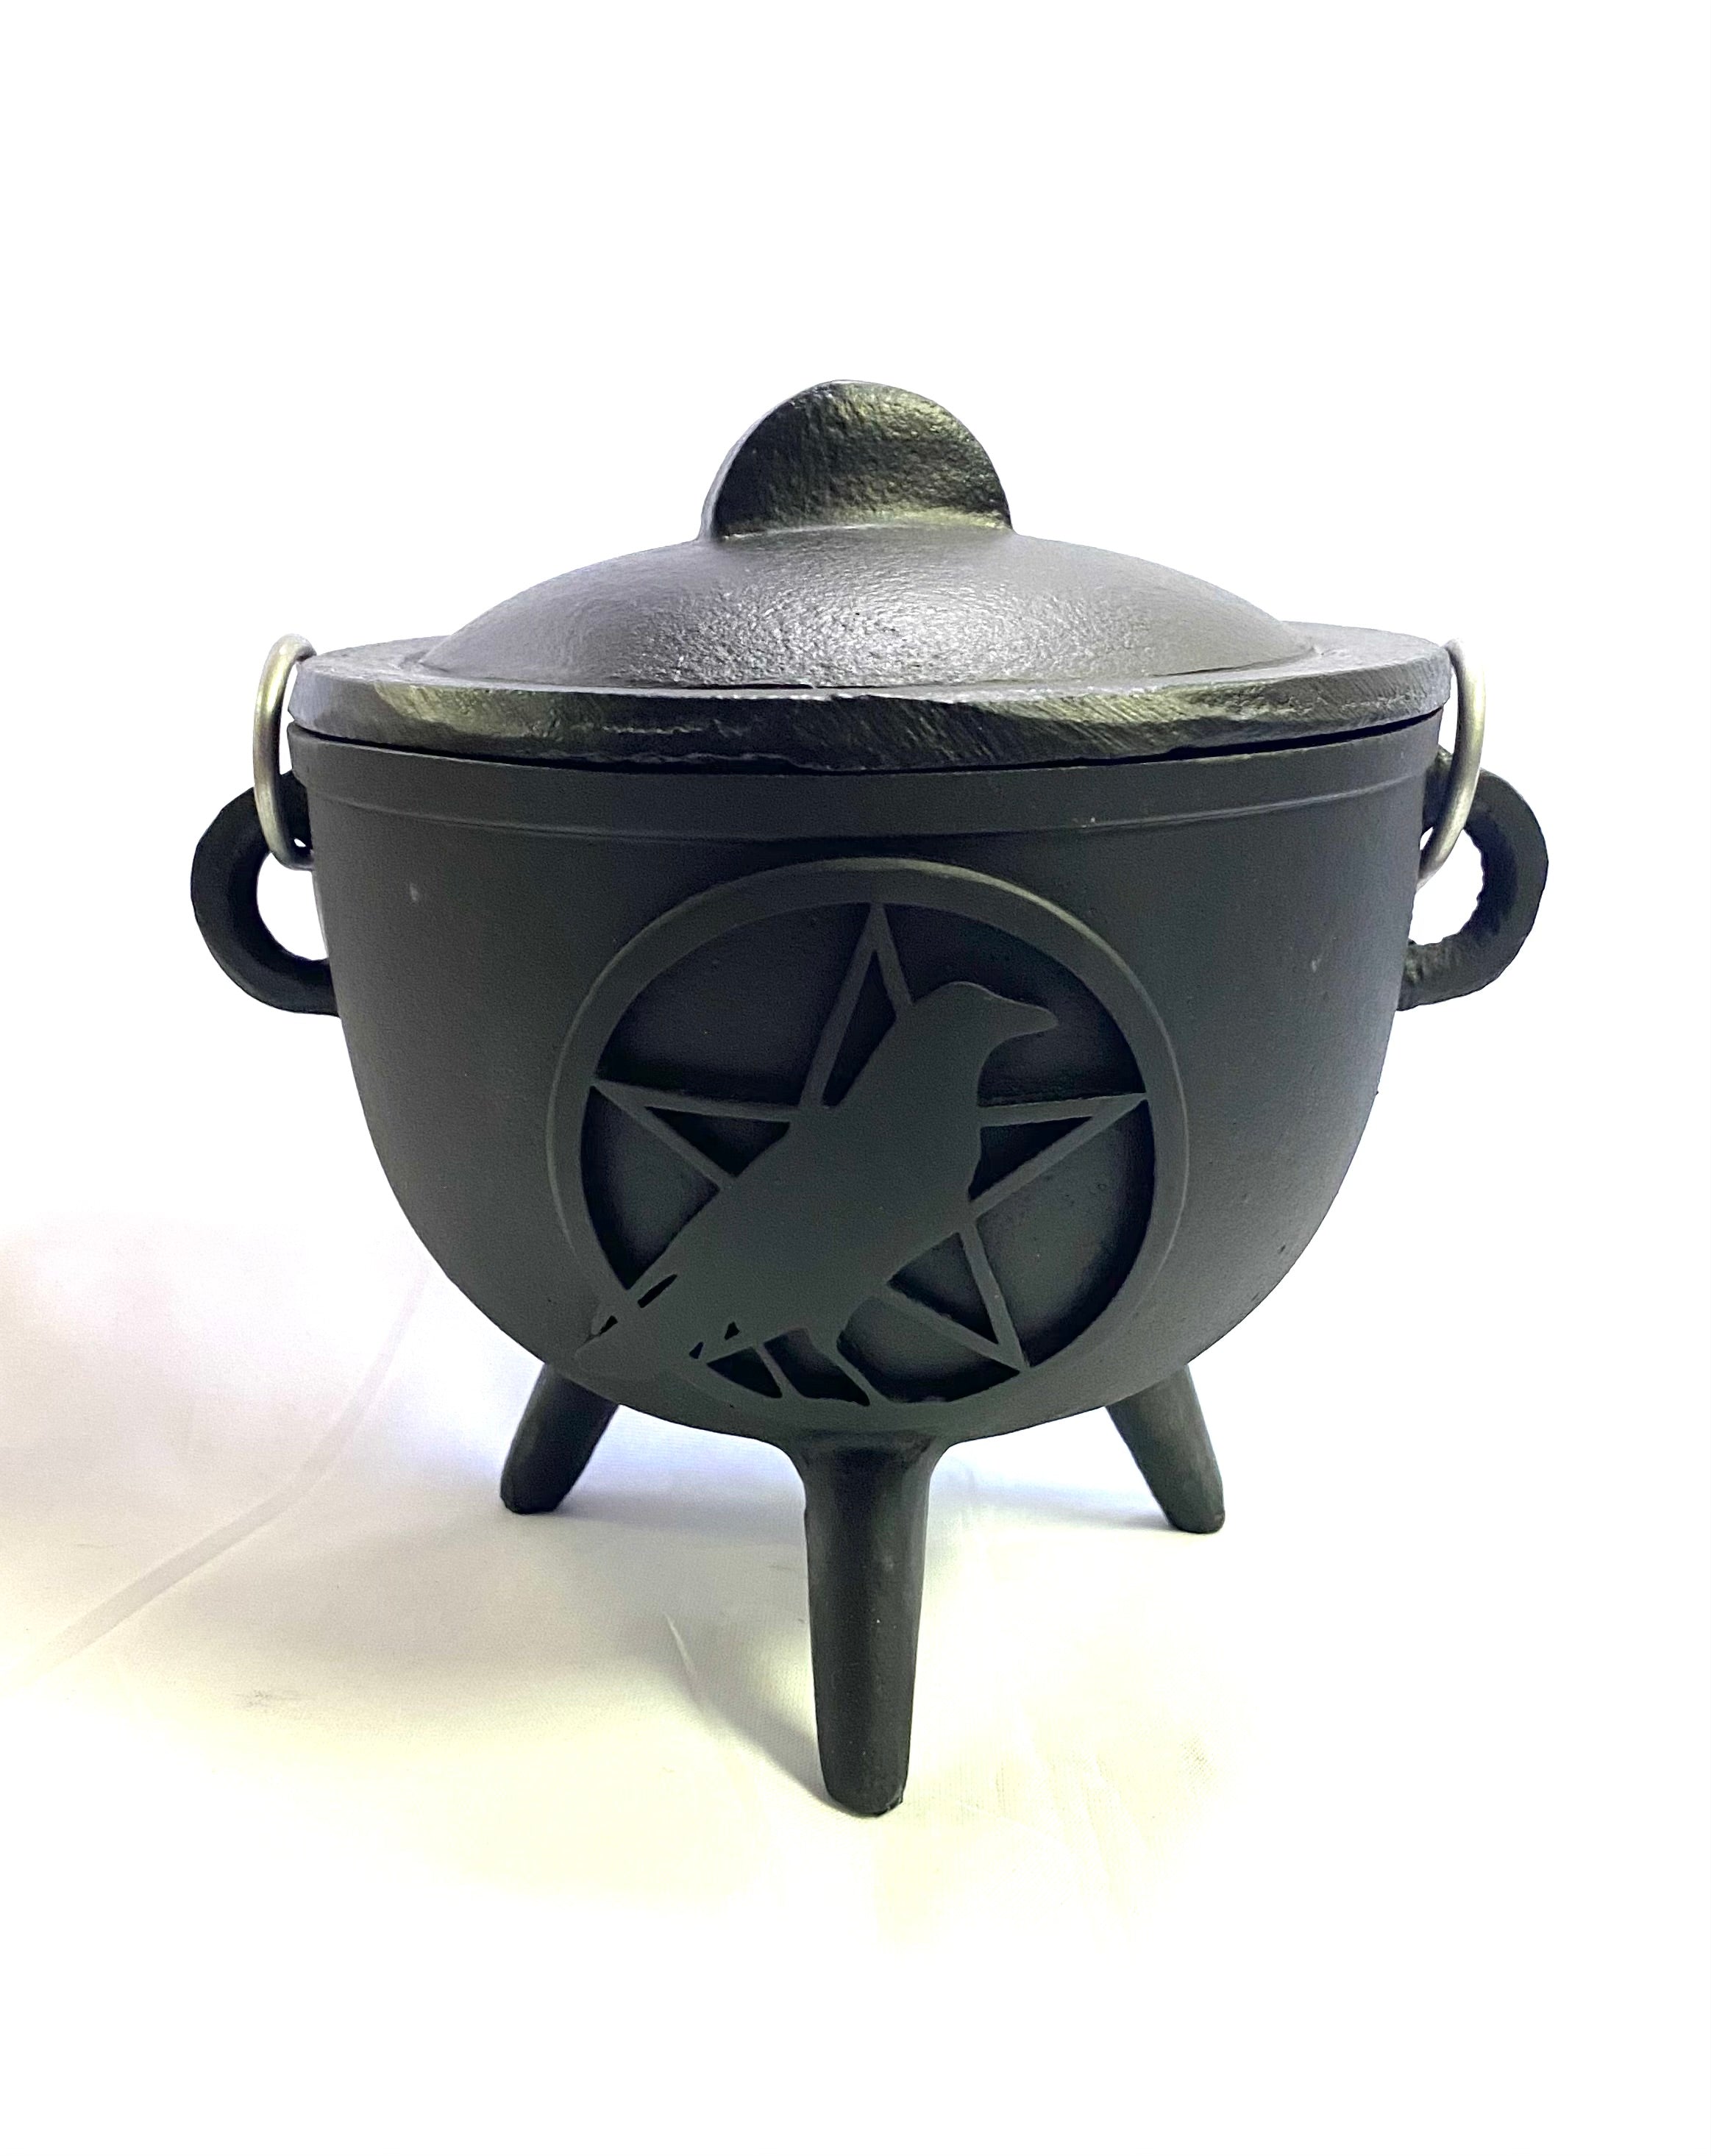 Raven Pentacle Cauldron 4” - Lighten Up Shop